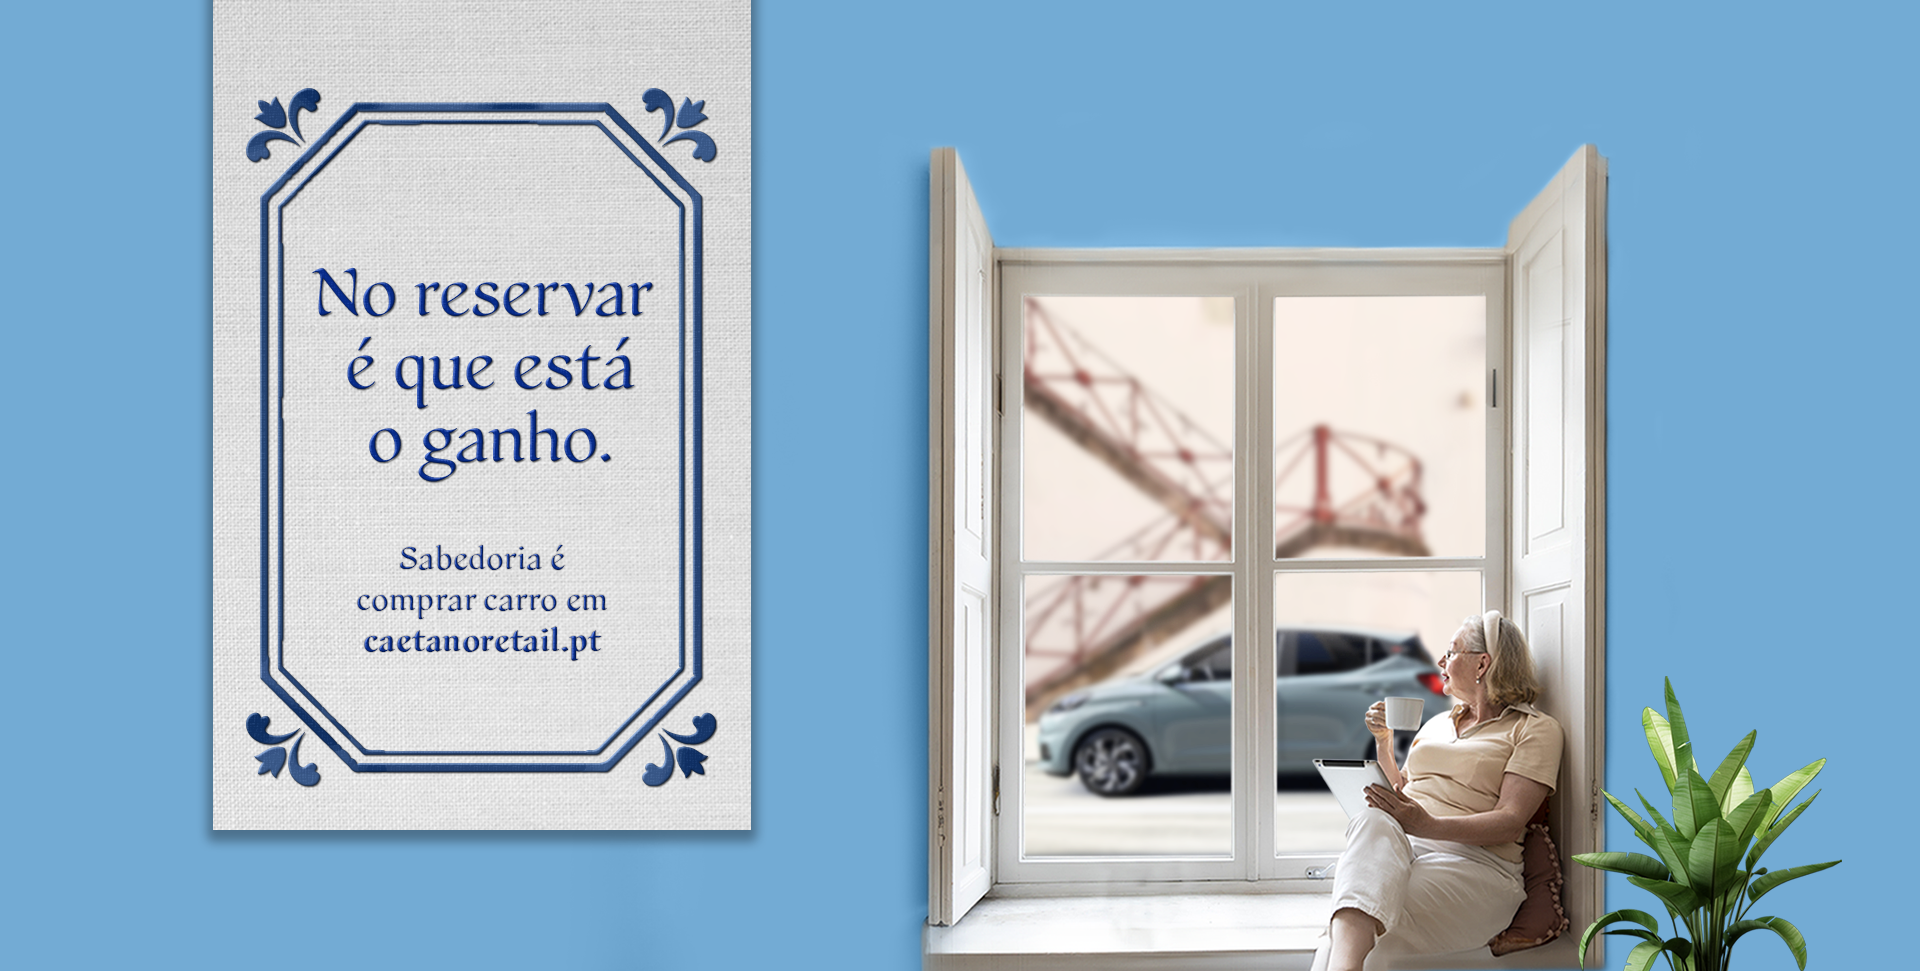 Campanha comprar carro online "Sabedoria é comprar carro em caetanoretail.pt"